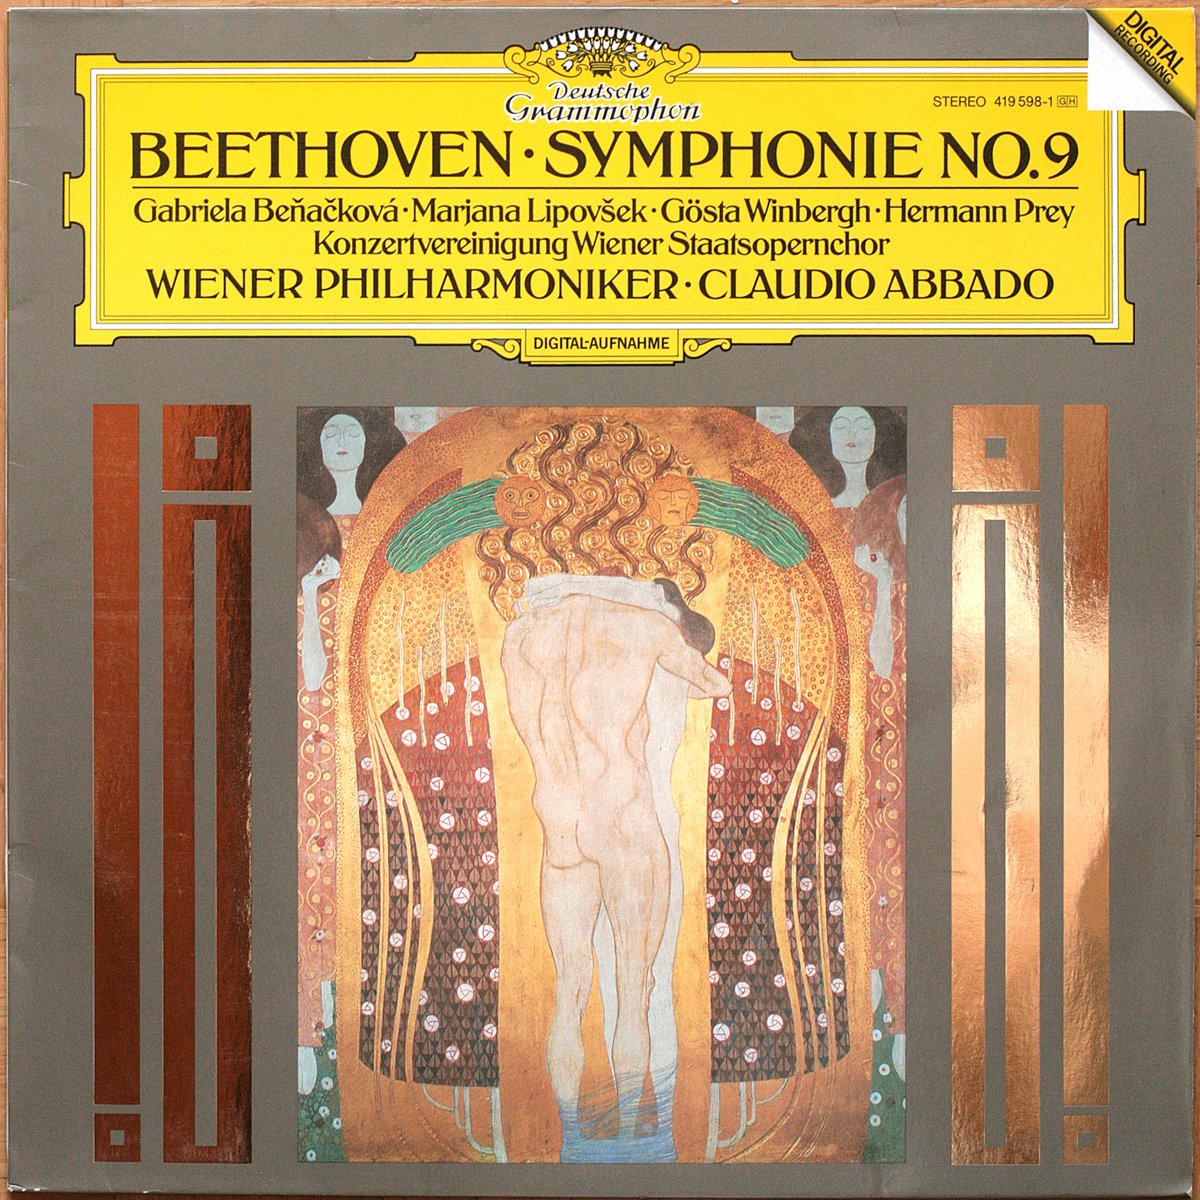 DGG 415 598 Beethoven Symphonie 9 Abbado DGG Digital Aufnahme